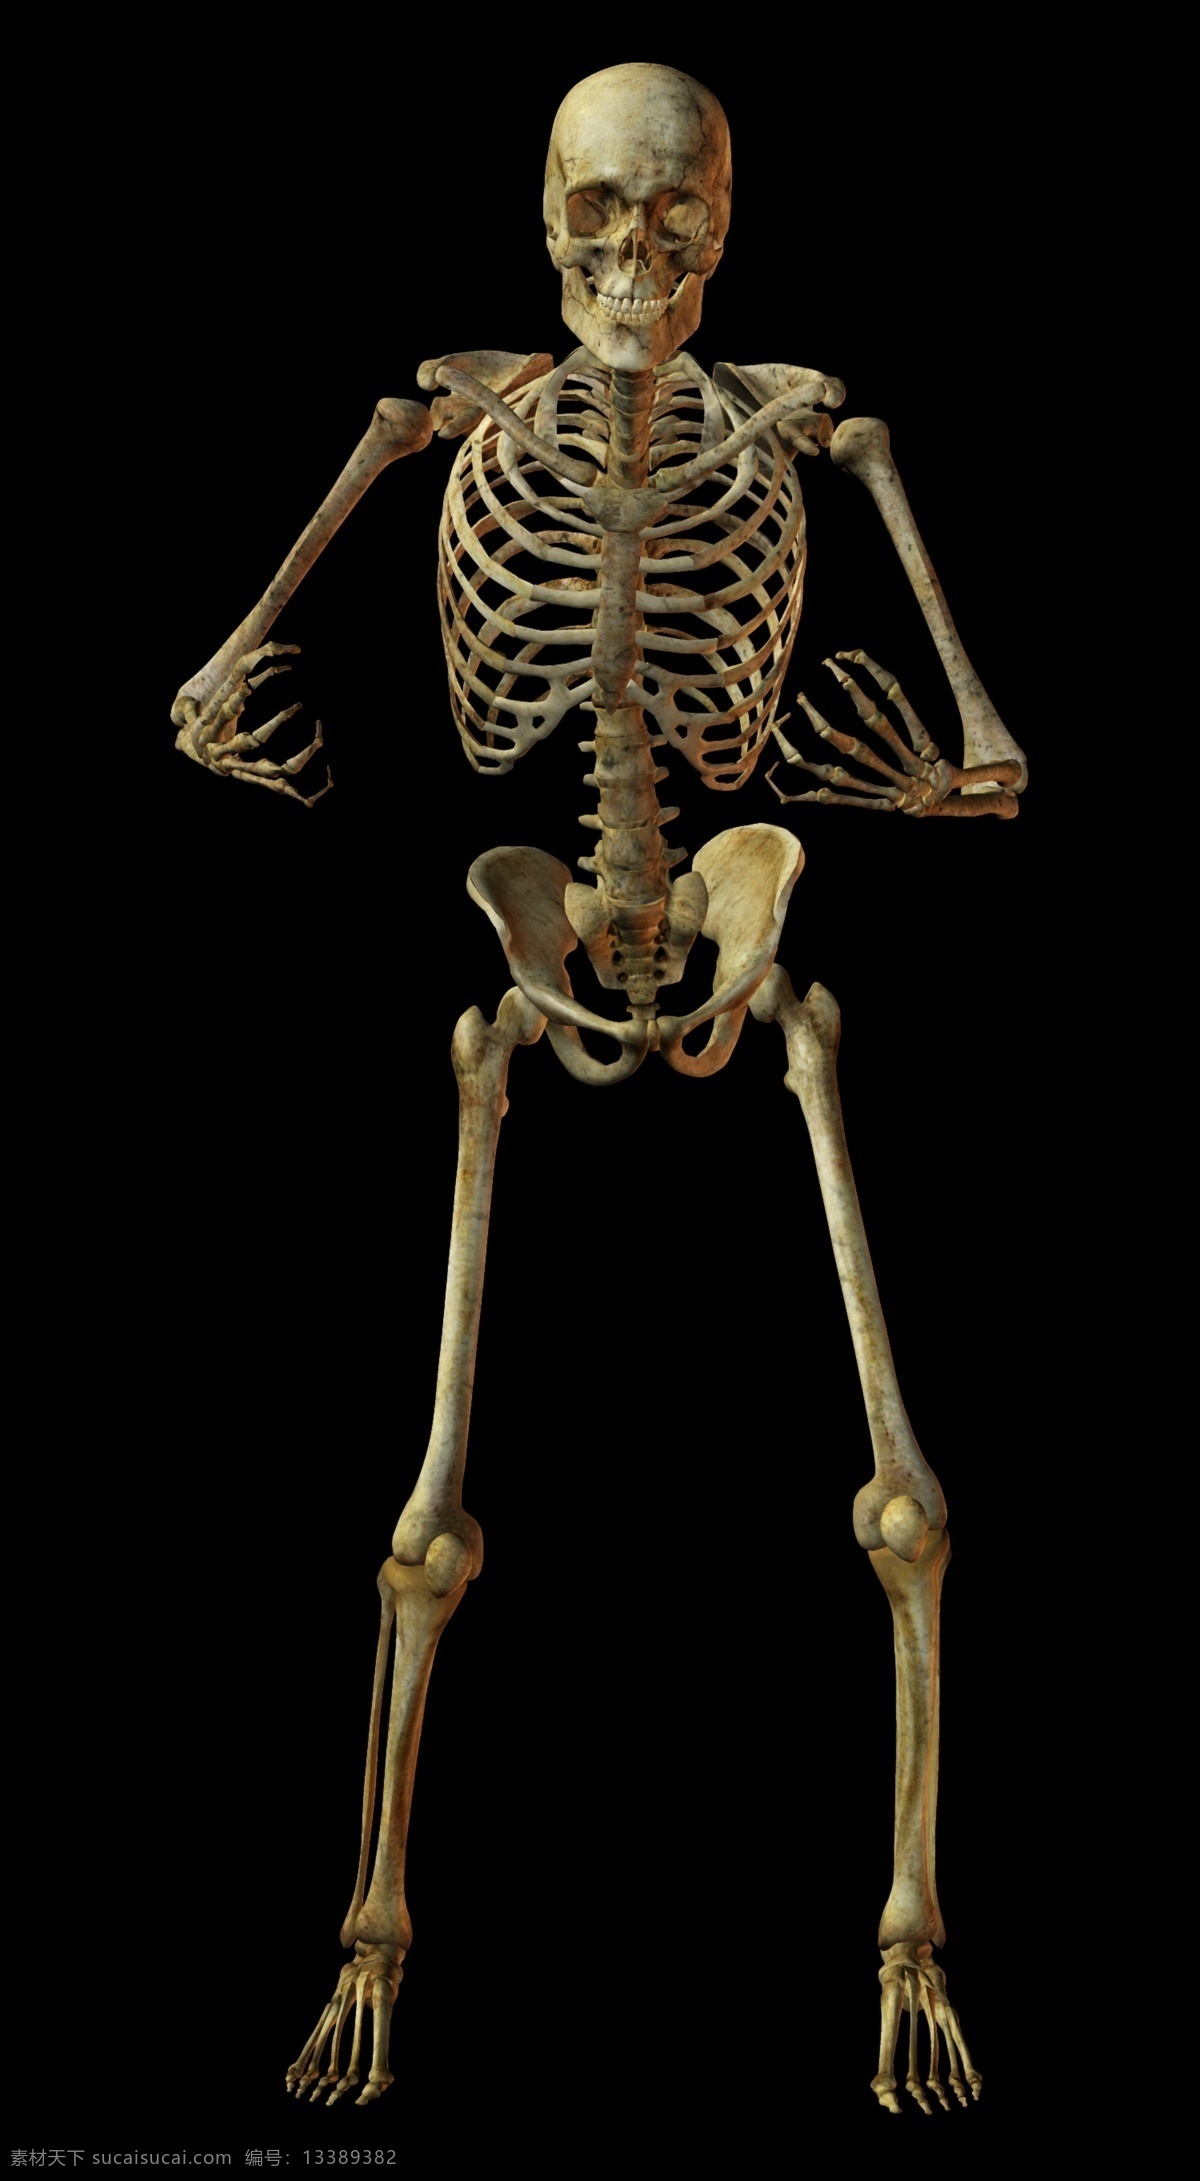 人体 骨骼 结构图 骷髅图片 骨架 骨架图片 骷髅素材 骷髅人 psd源文件